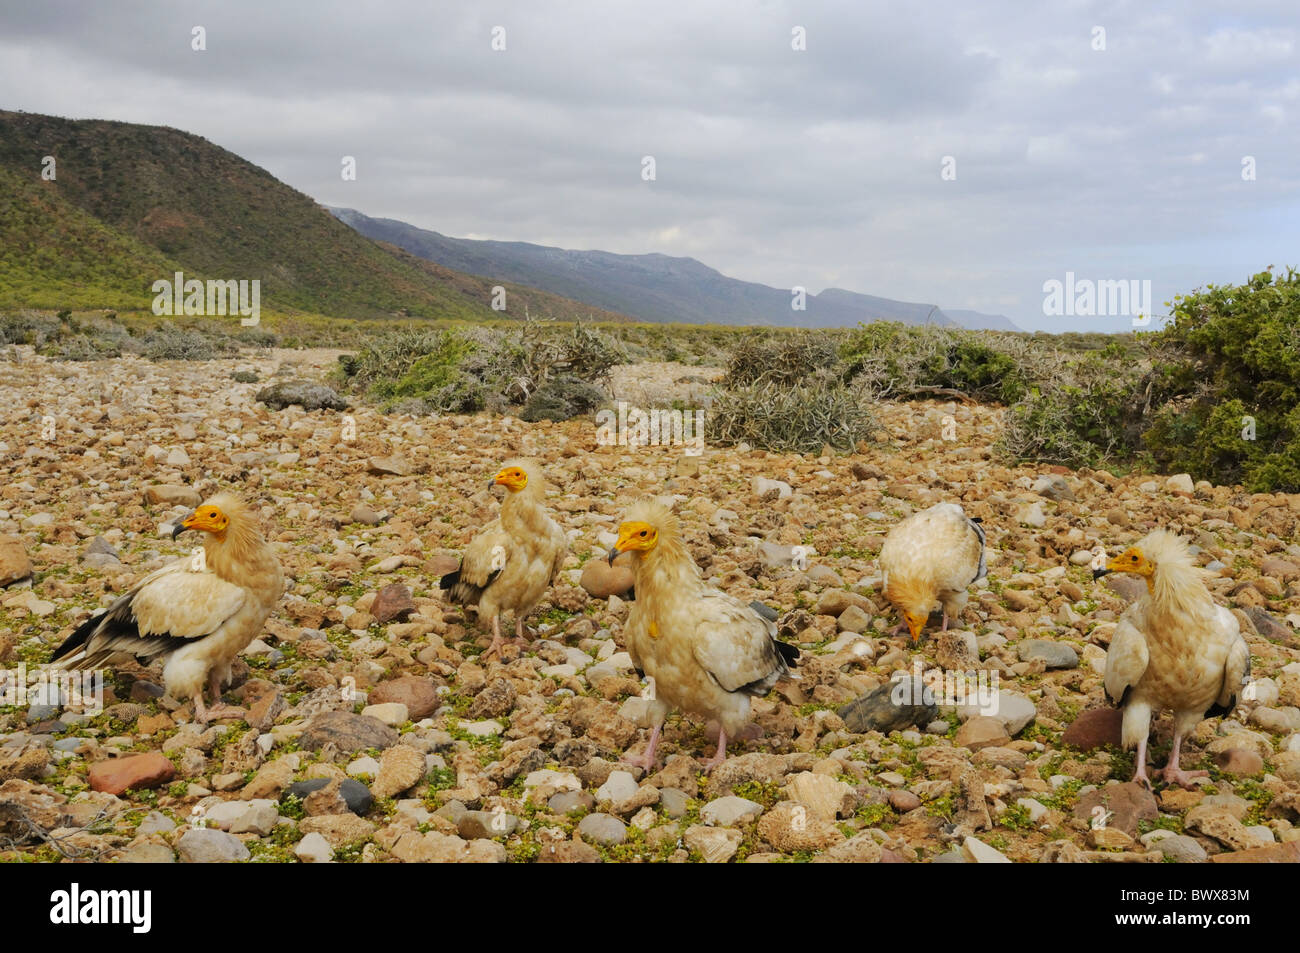 Percnoptère (Neophron percnopterus) cinq adultes, debout sur un sol rocailleux de l'habitat, l'île de Socotra, au Yémen Banque D'Images